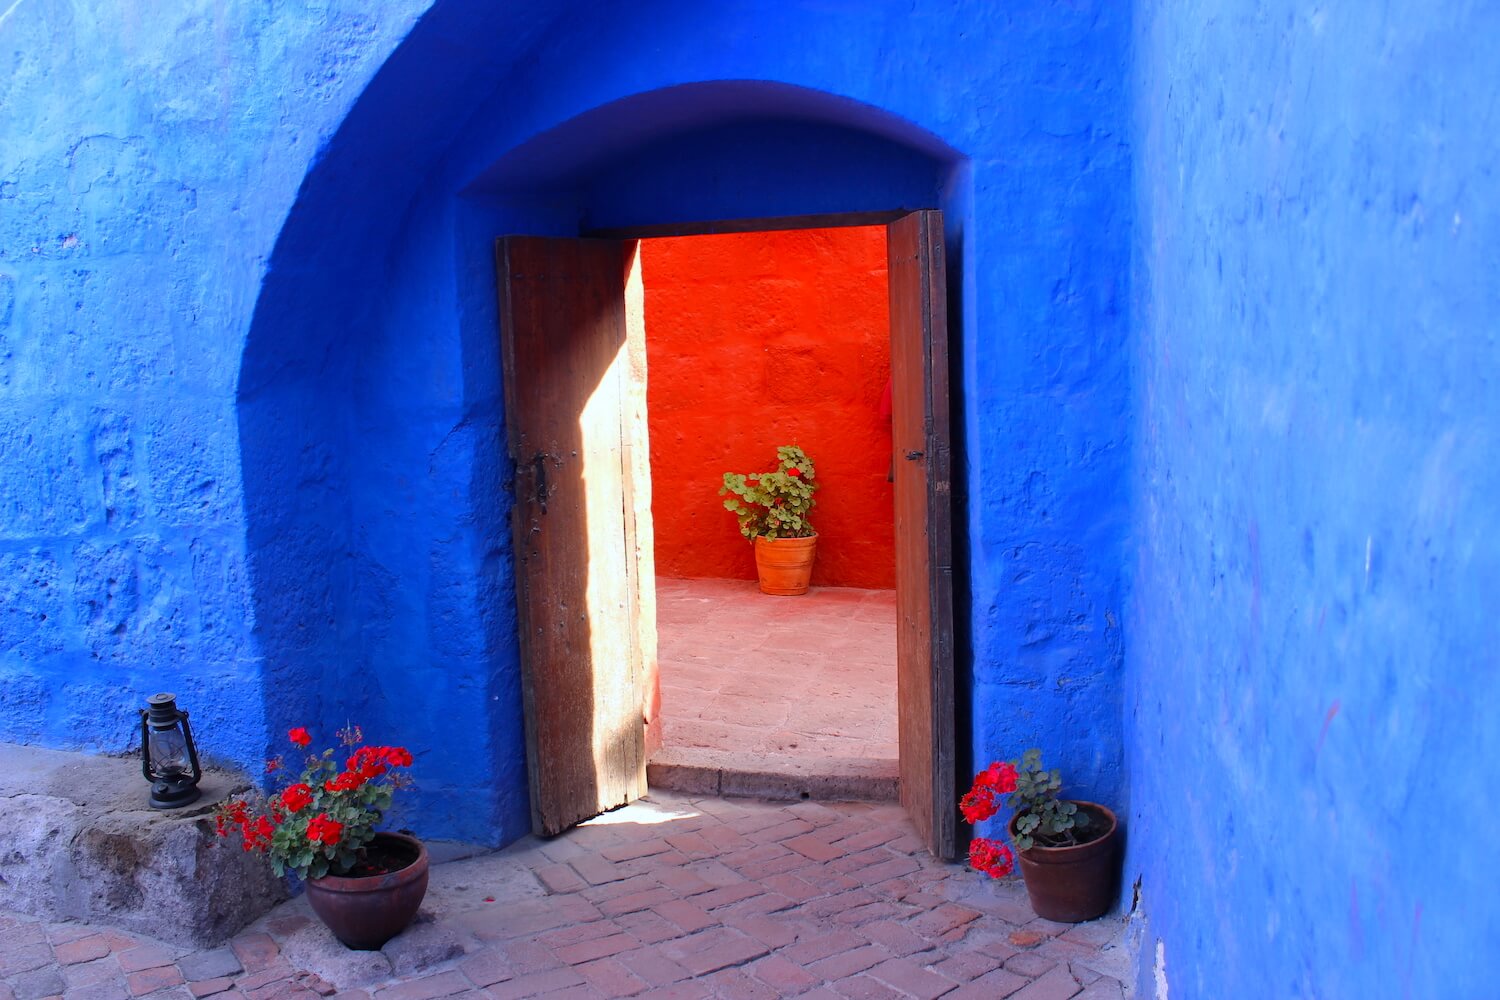 monastery of santa catalina blue wall